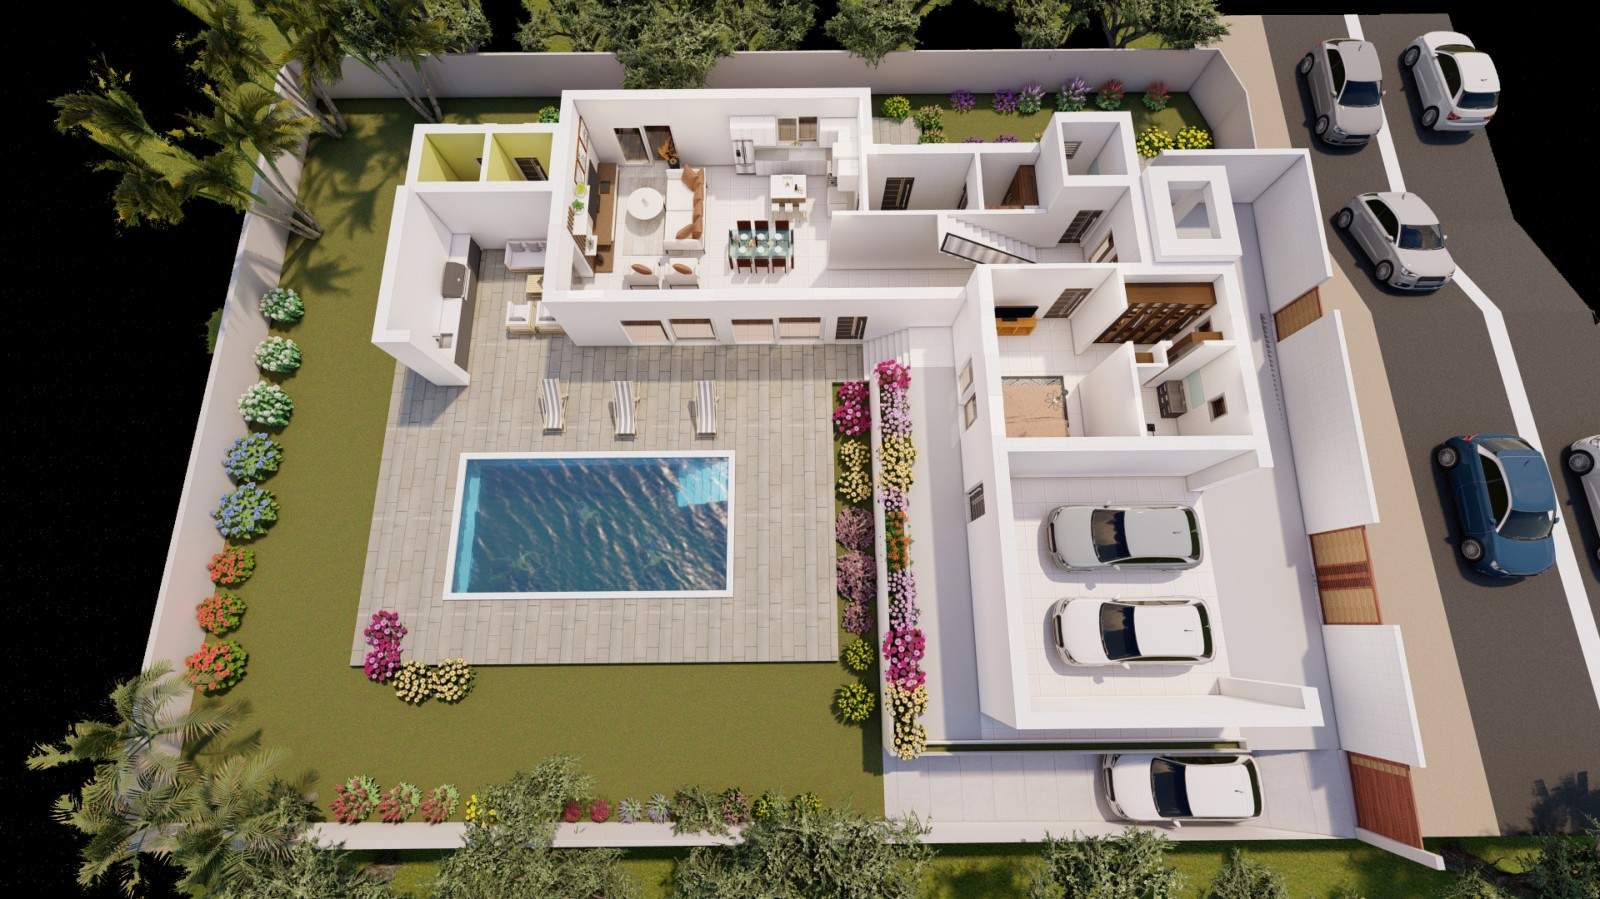 Villa de 4 dormitorios en construcción, en venta en Porto de Mós, Algarve_211044